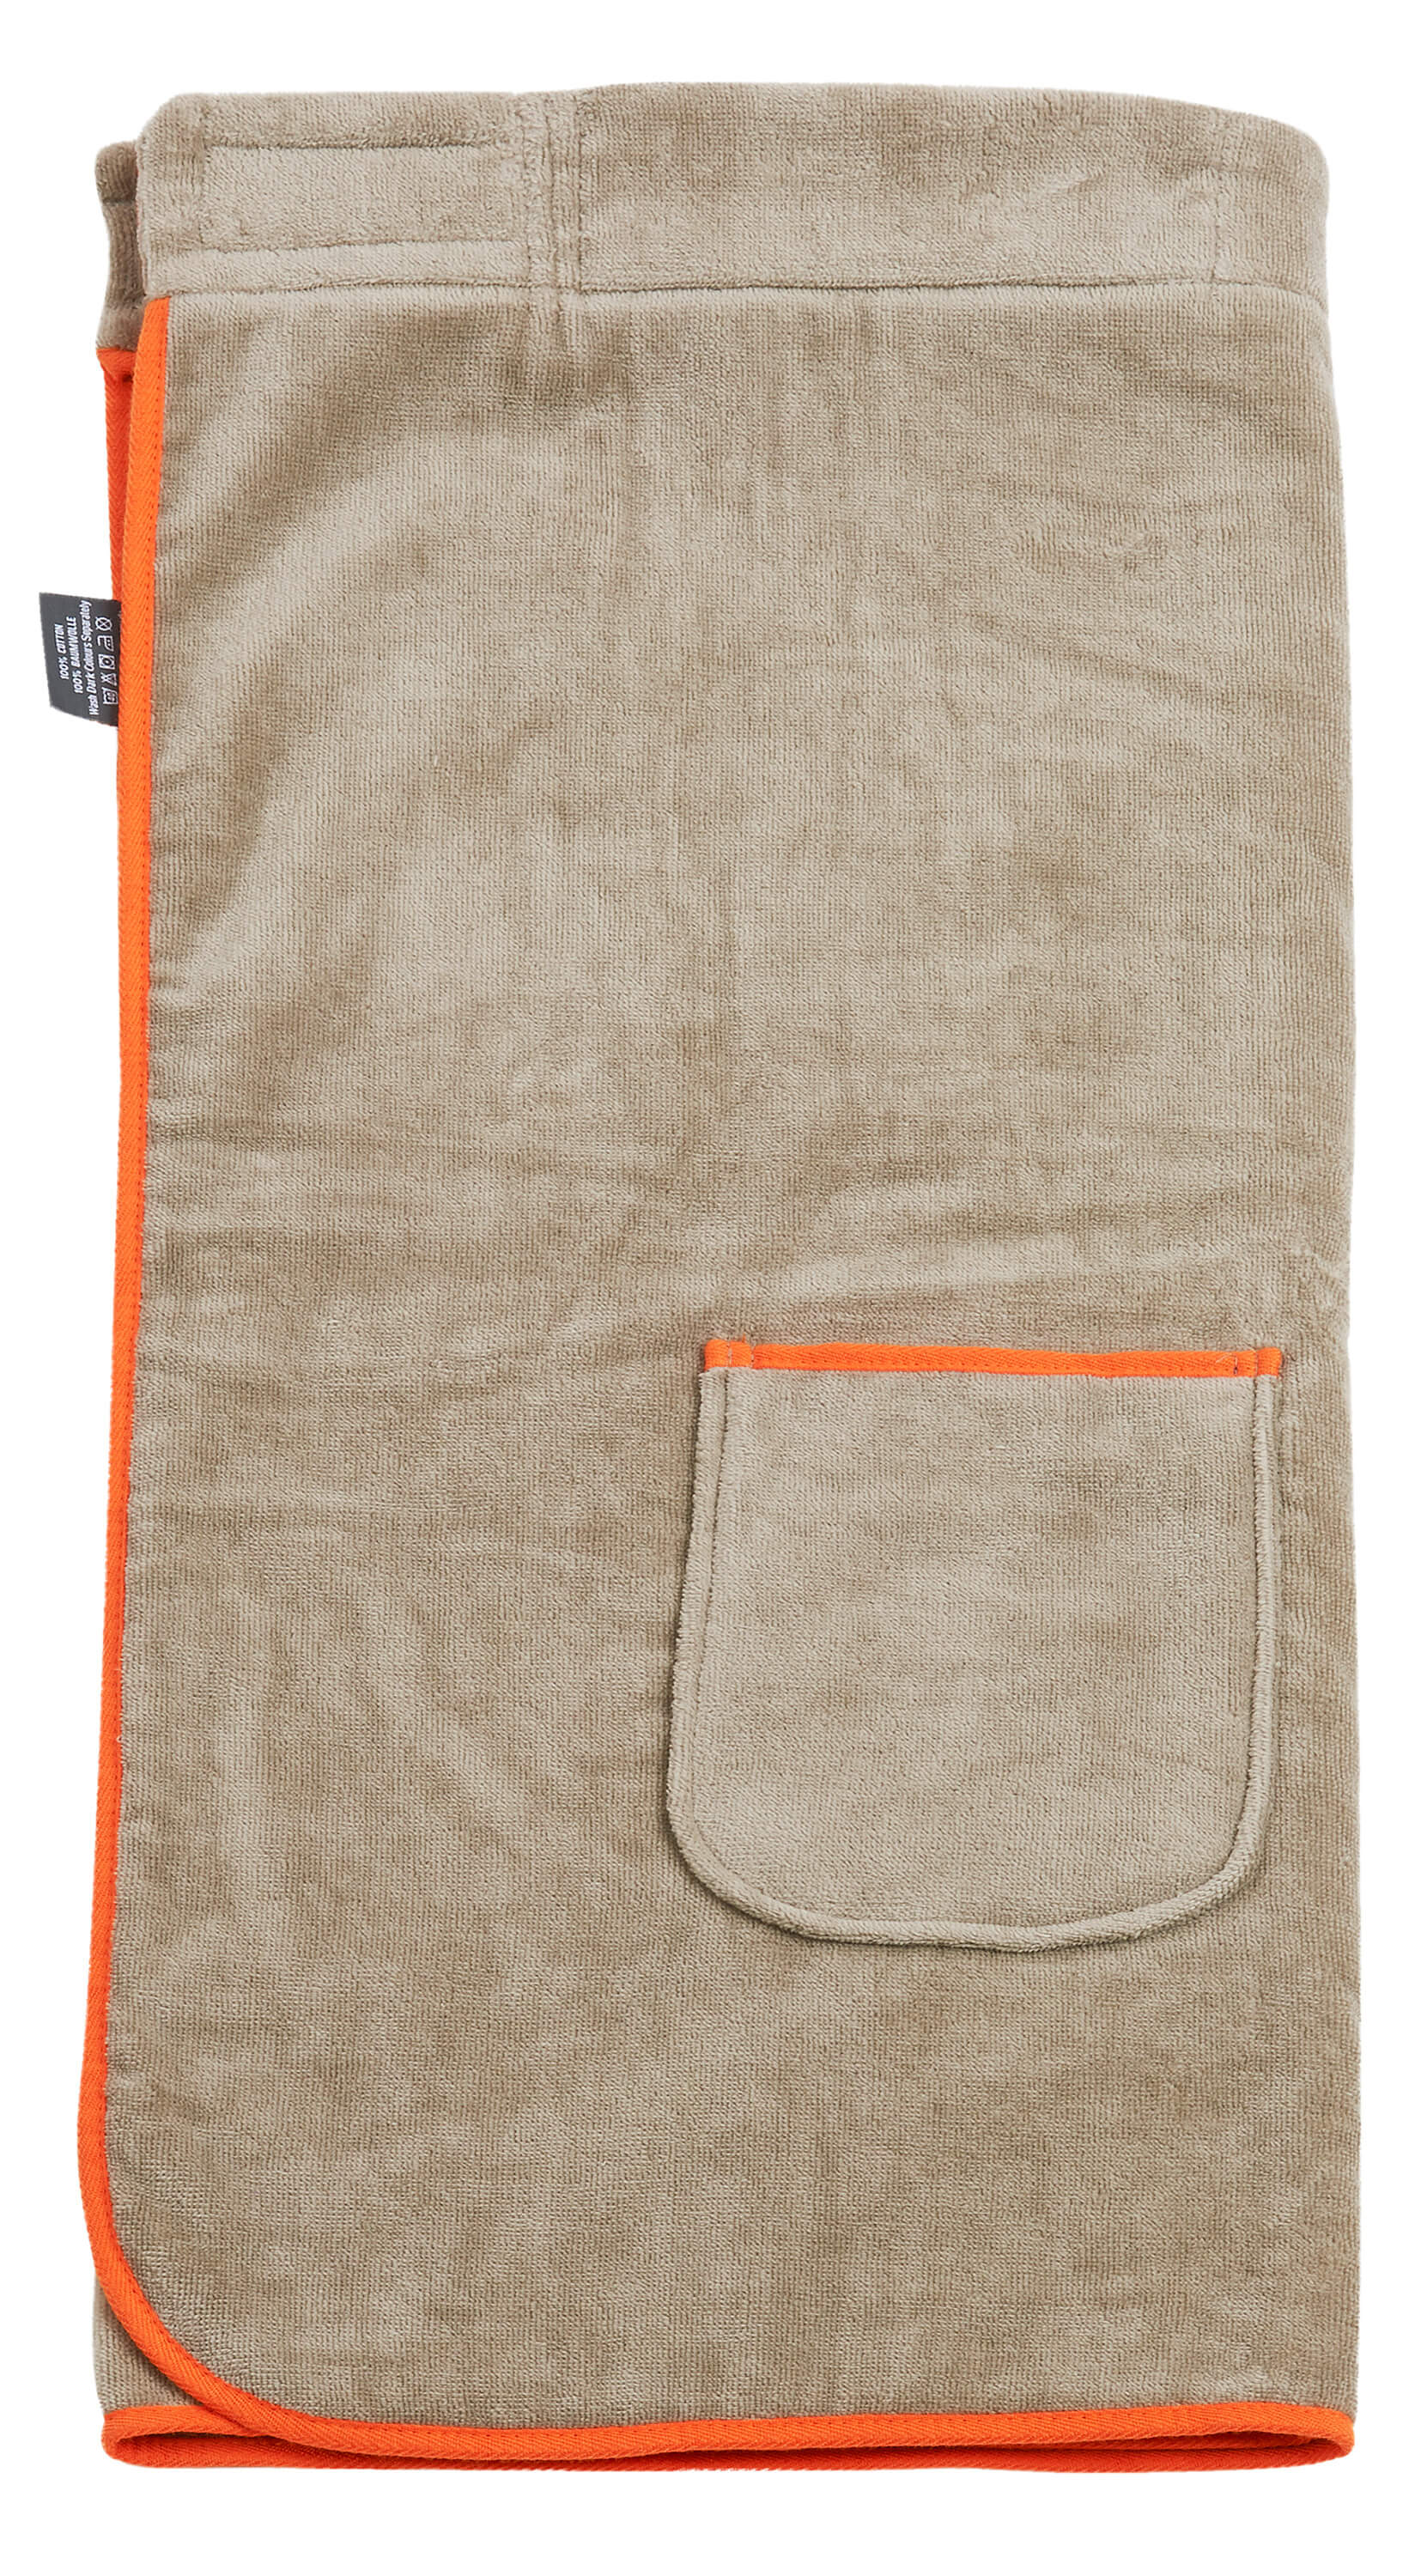 Женская юбка-килт Saunakilt Taupe ☞ Размер: 80 x 140 см